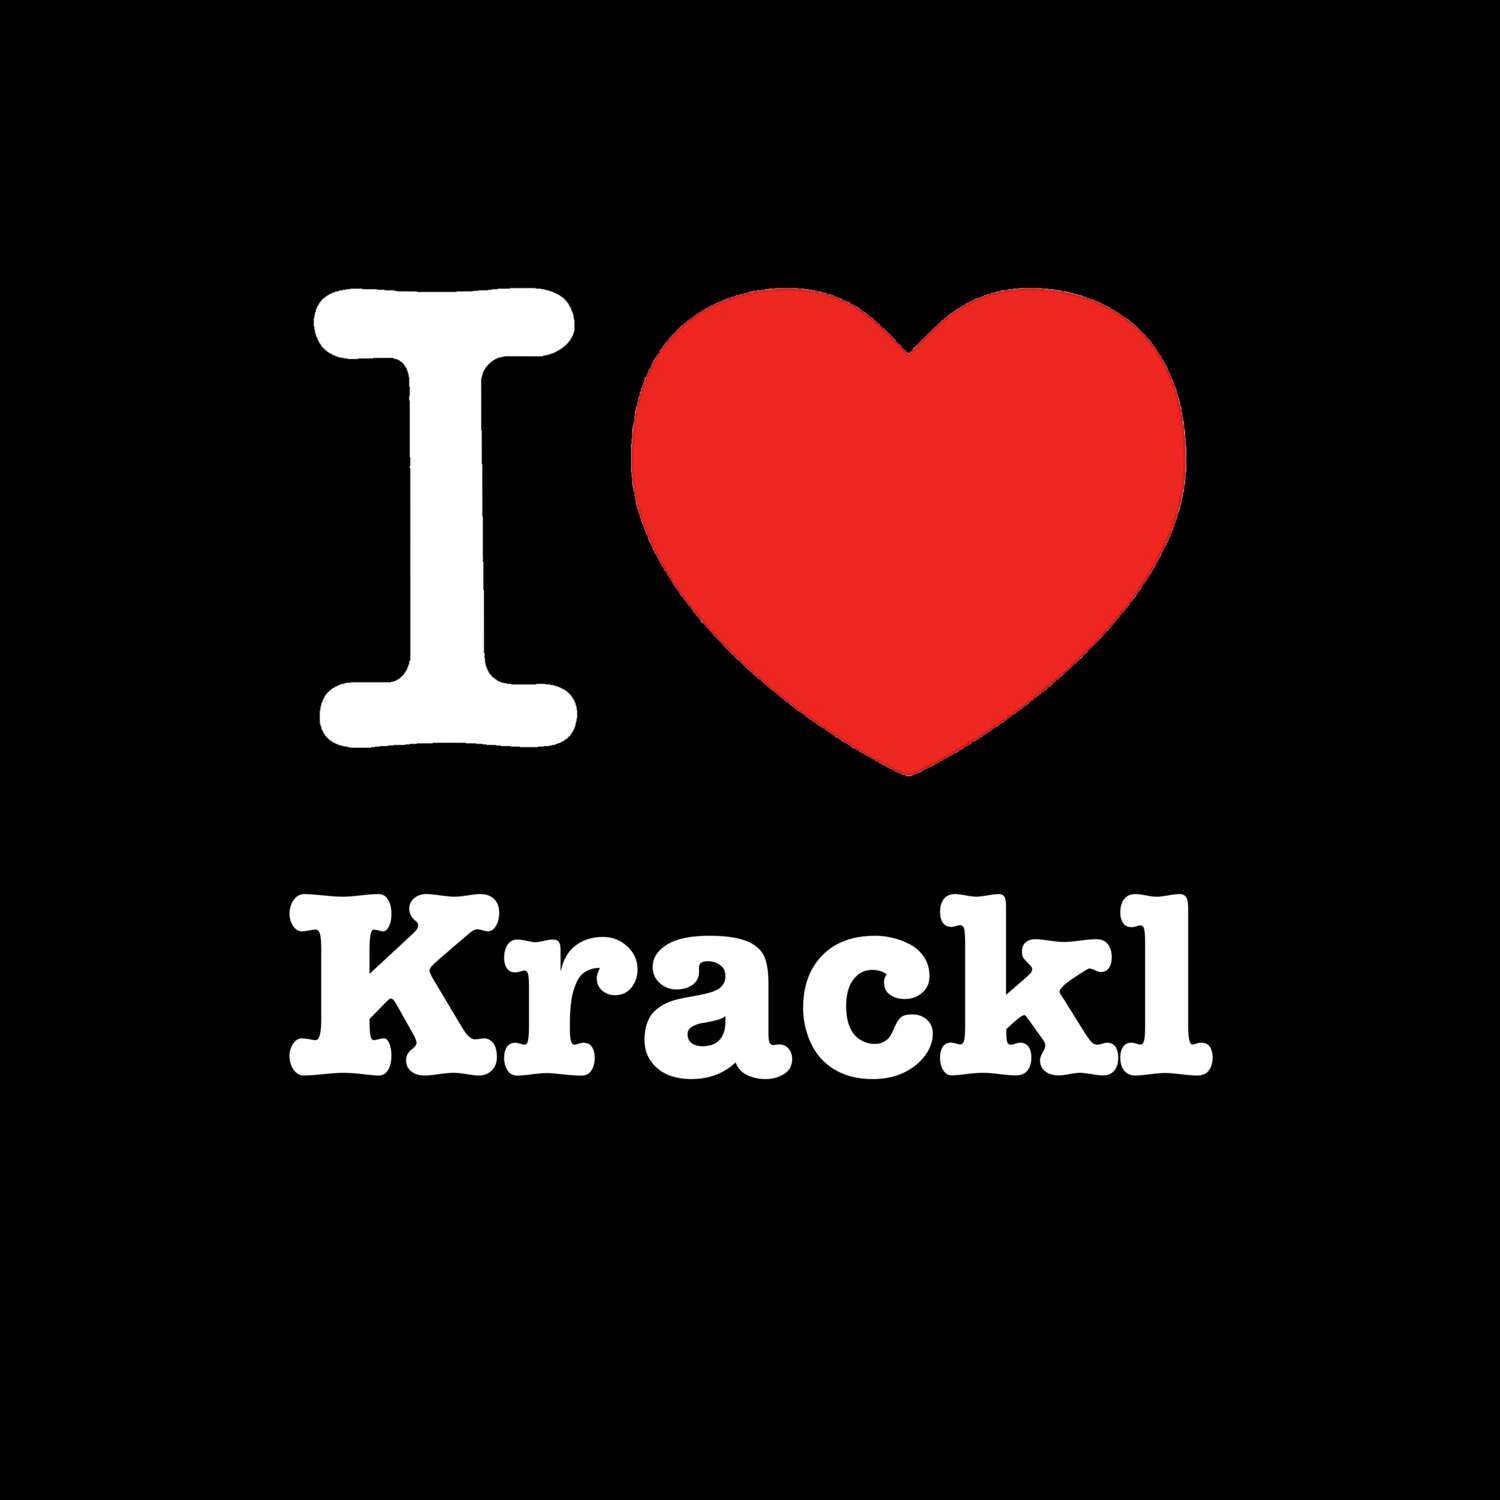 Krackl T-Shirt »I love«